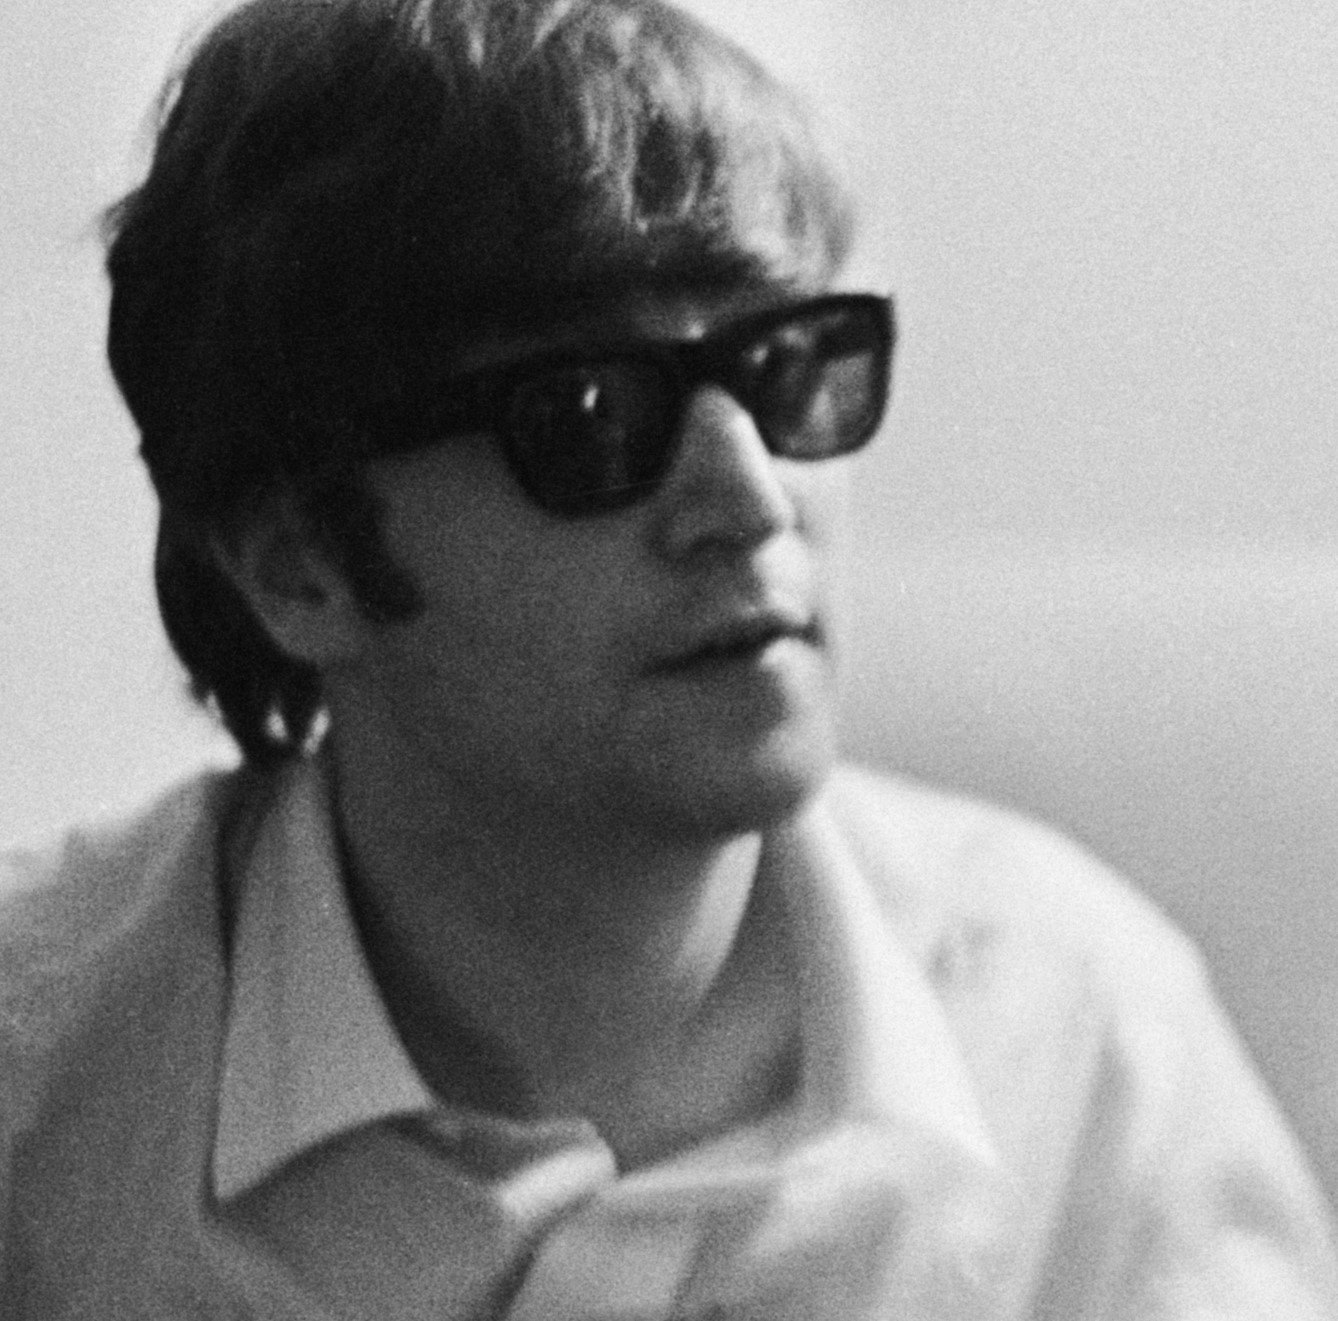 The Beatles' John Lennon wearing glasses